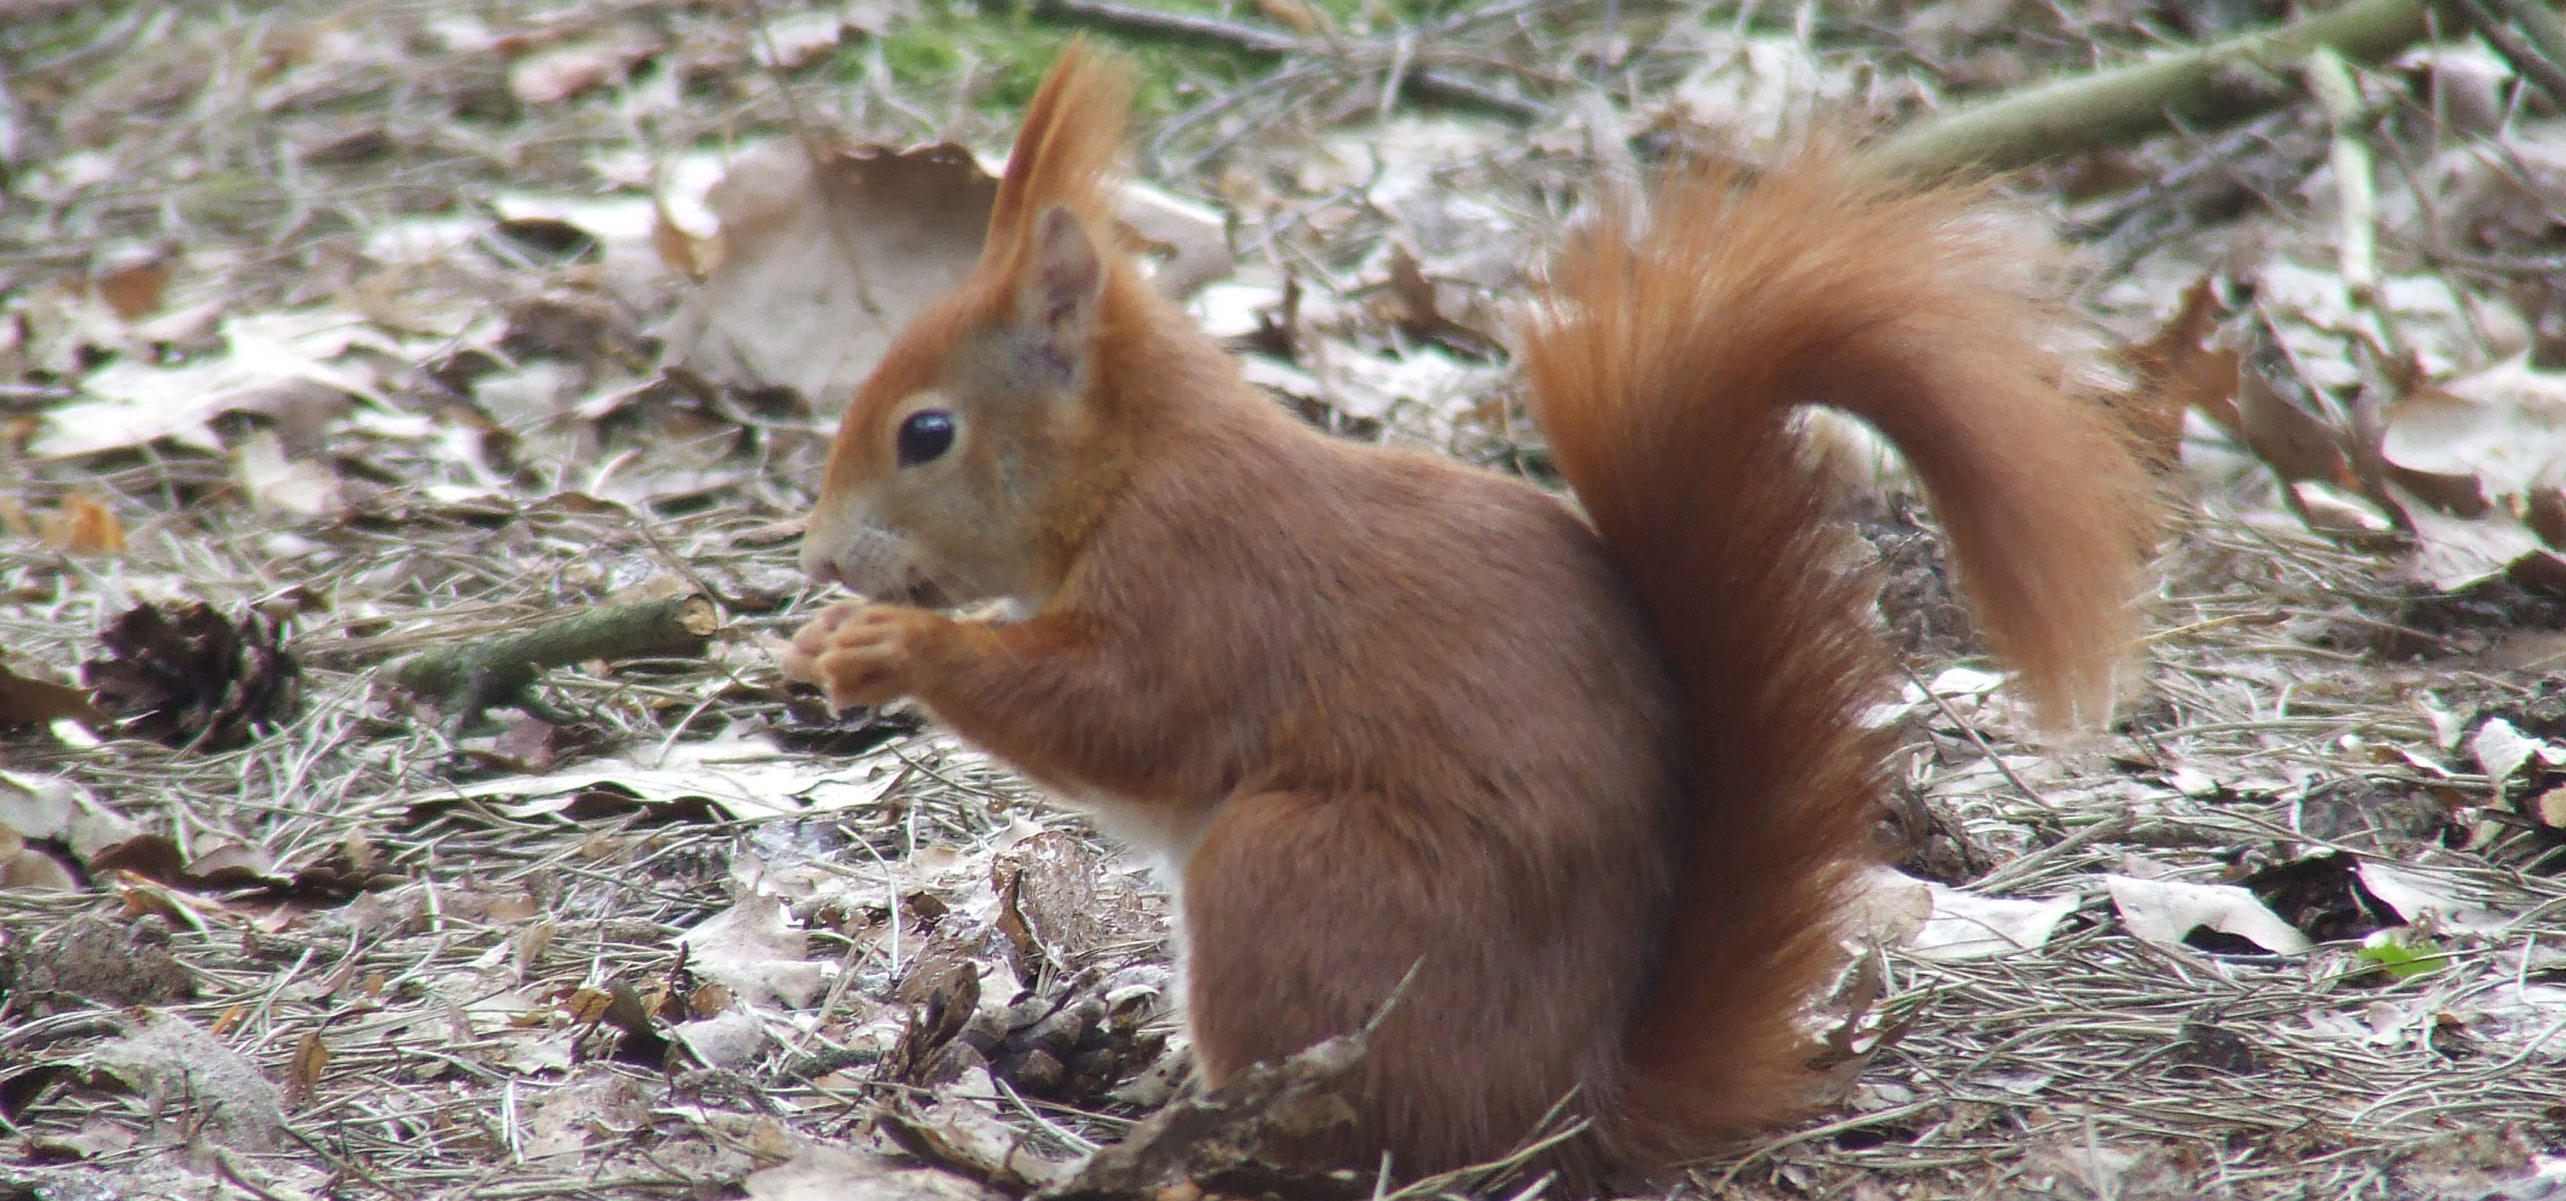 Eekhoorn in 2013 afgenomen 2014 is het jaar van de eekhoorn. In het kader daarvan wordt maandelijks over dit dier geschreven op de website www.natuurbericht.nl.